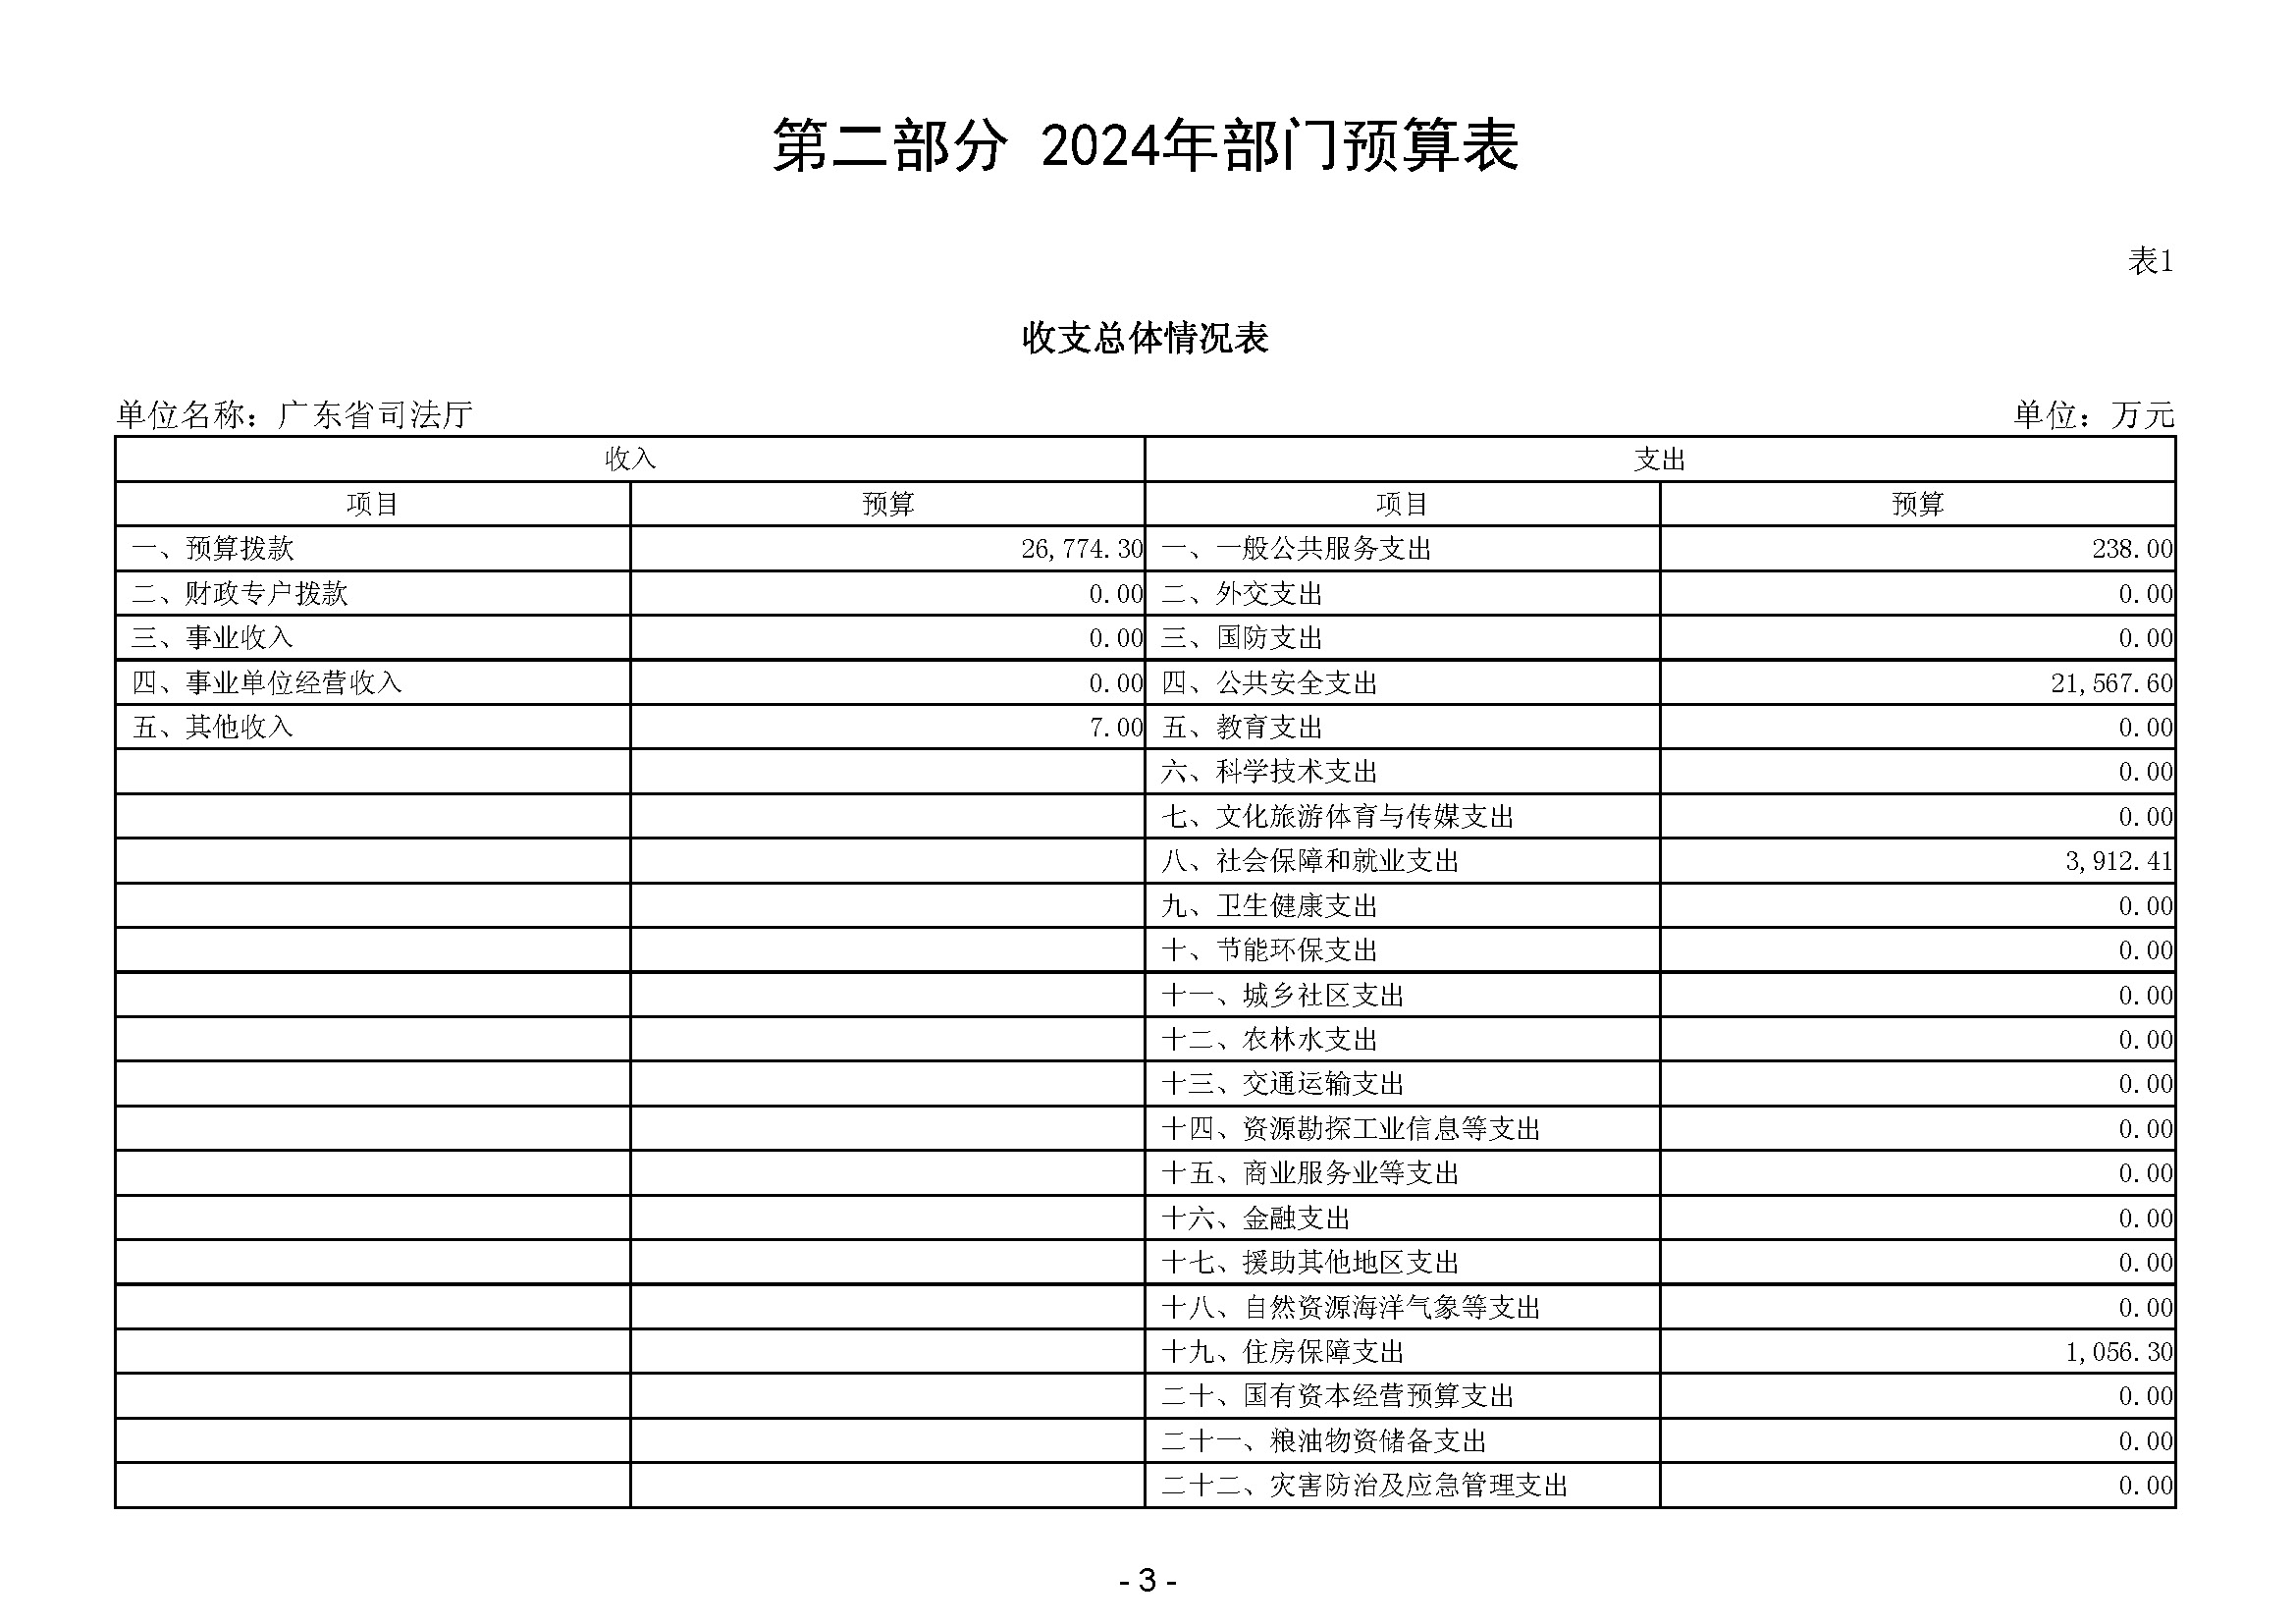 2024年广东省司法厅部门预算_(公开版)(留痕)_页面_05.jpg